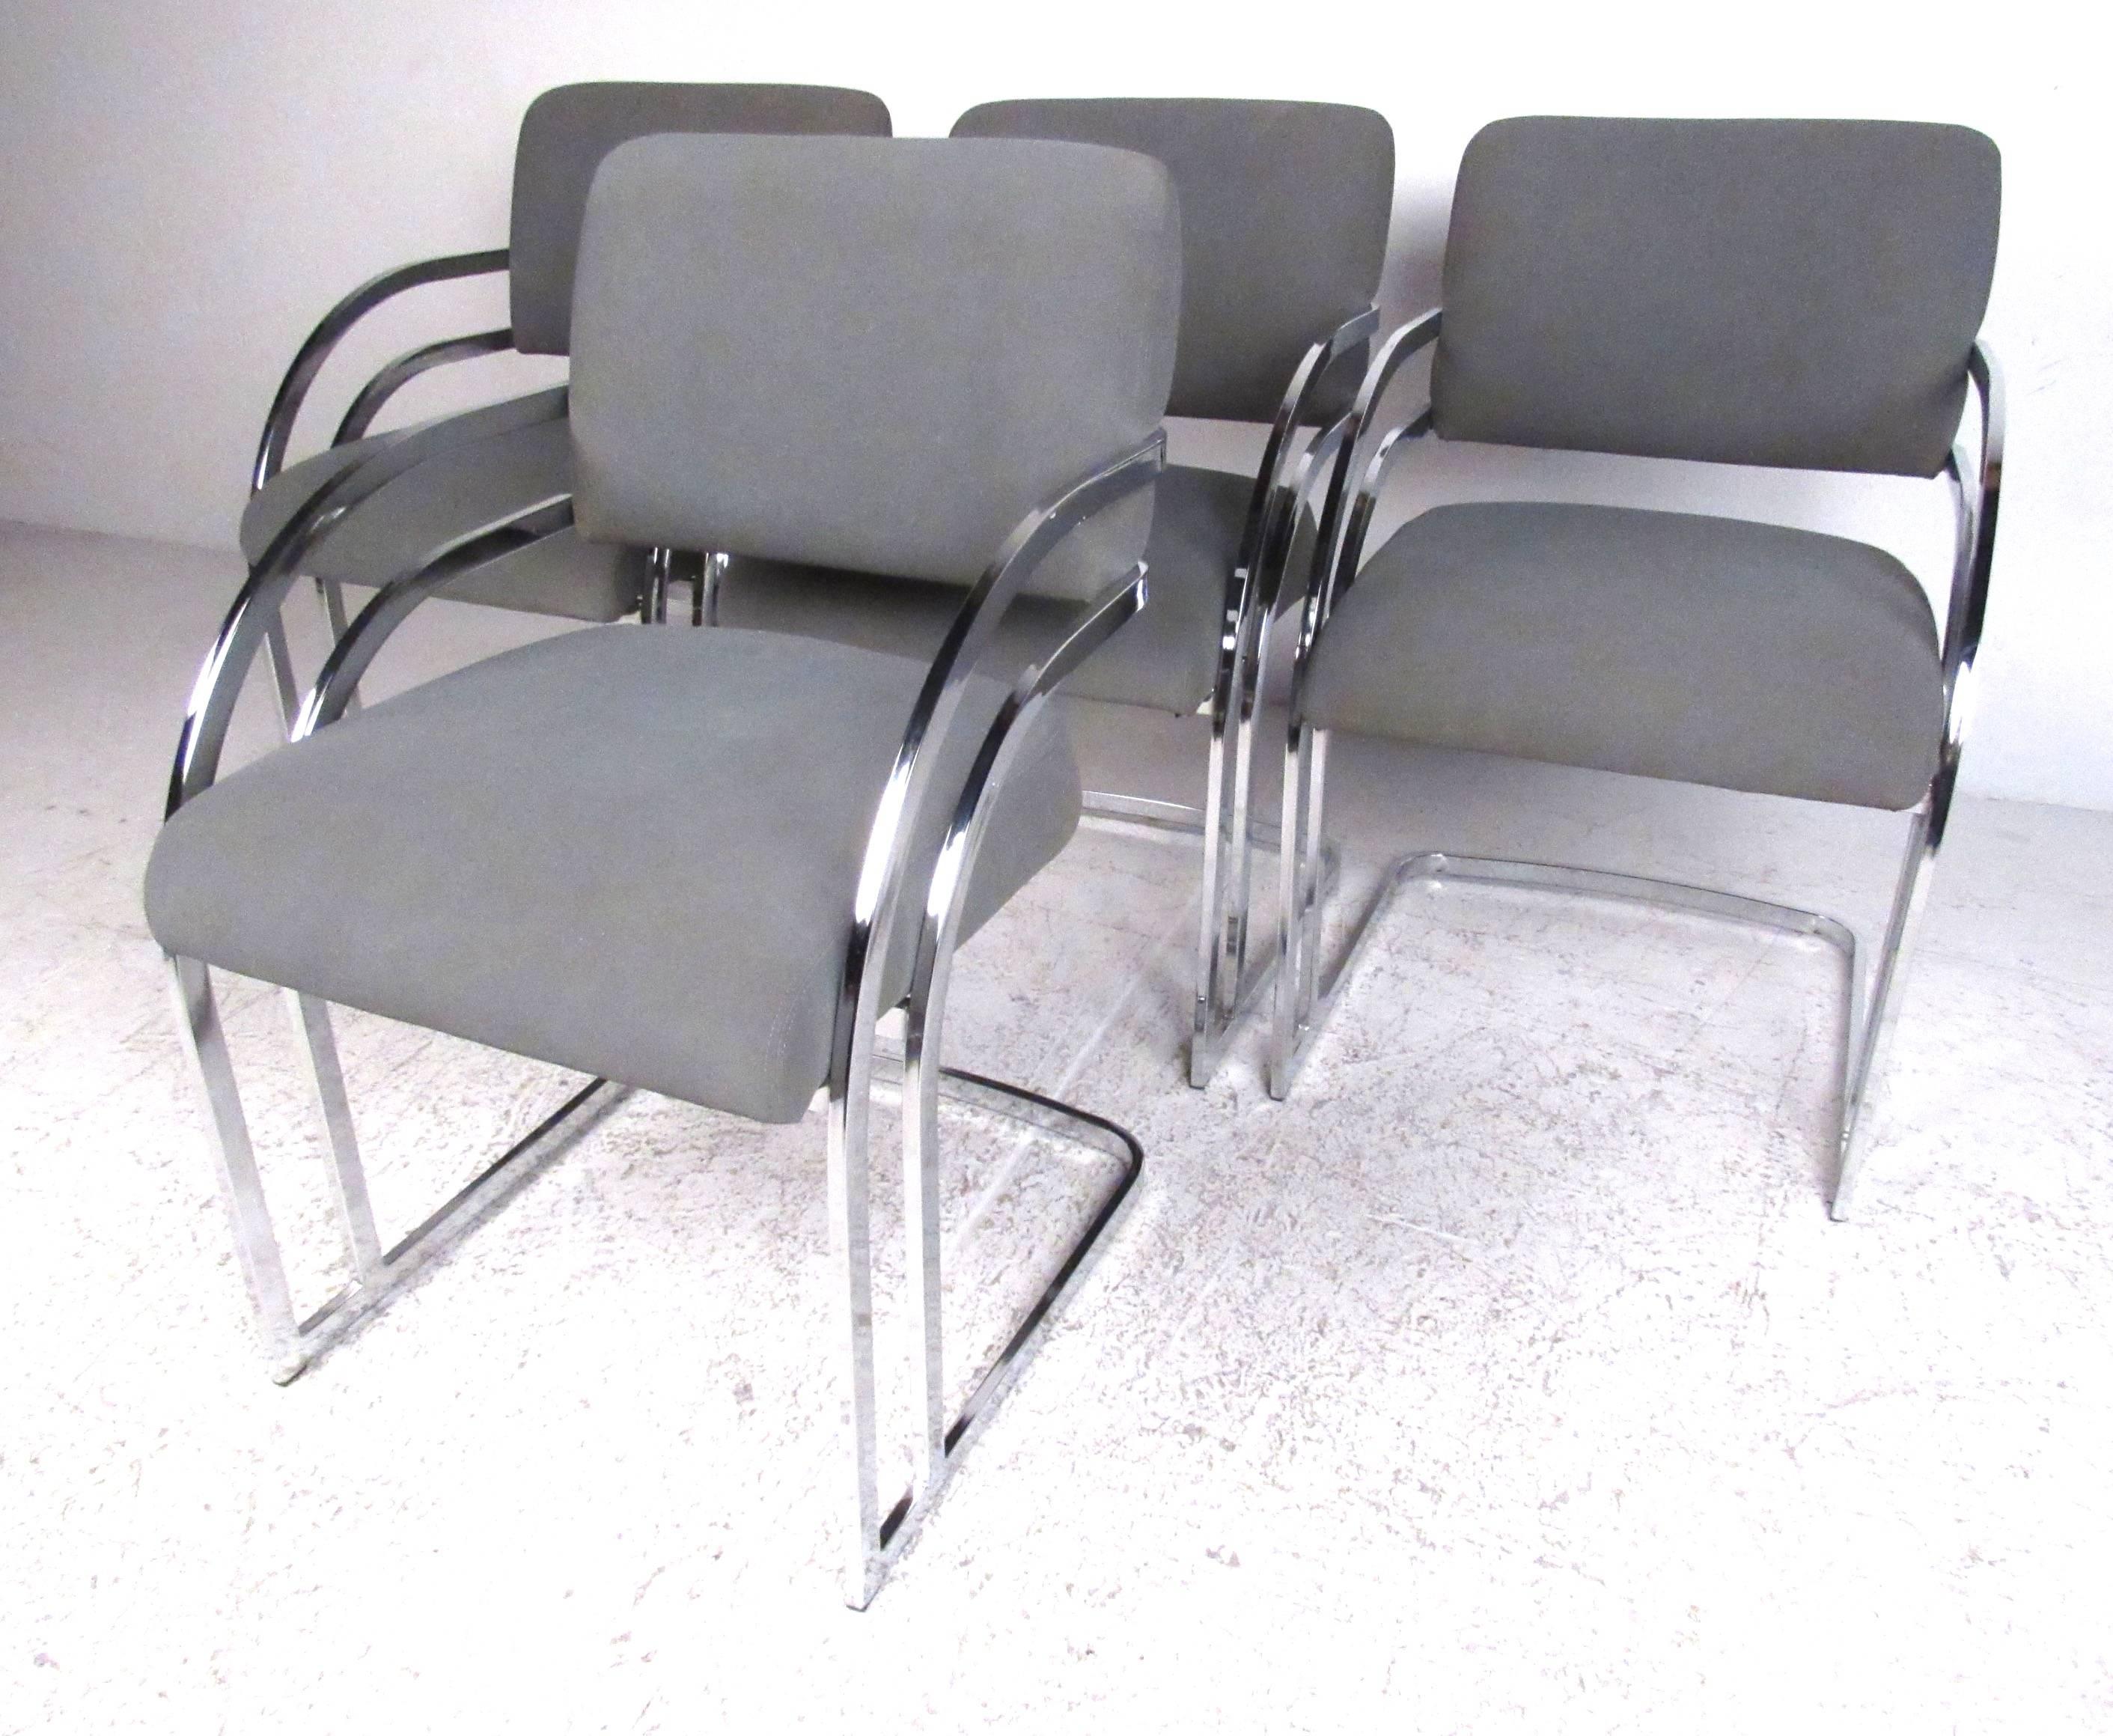 Satz von vier Esstischsesseln von Contemporary Shells Inc. aus Hempstead NY mit verchromten Gestellen und tiefgrauer Wollfilzpolsterung. Mit ihrem stilvollen Mid-Century-Modern-Look passen diese Stühle problemlos in eine Wohn- oder Büroumgebung.